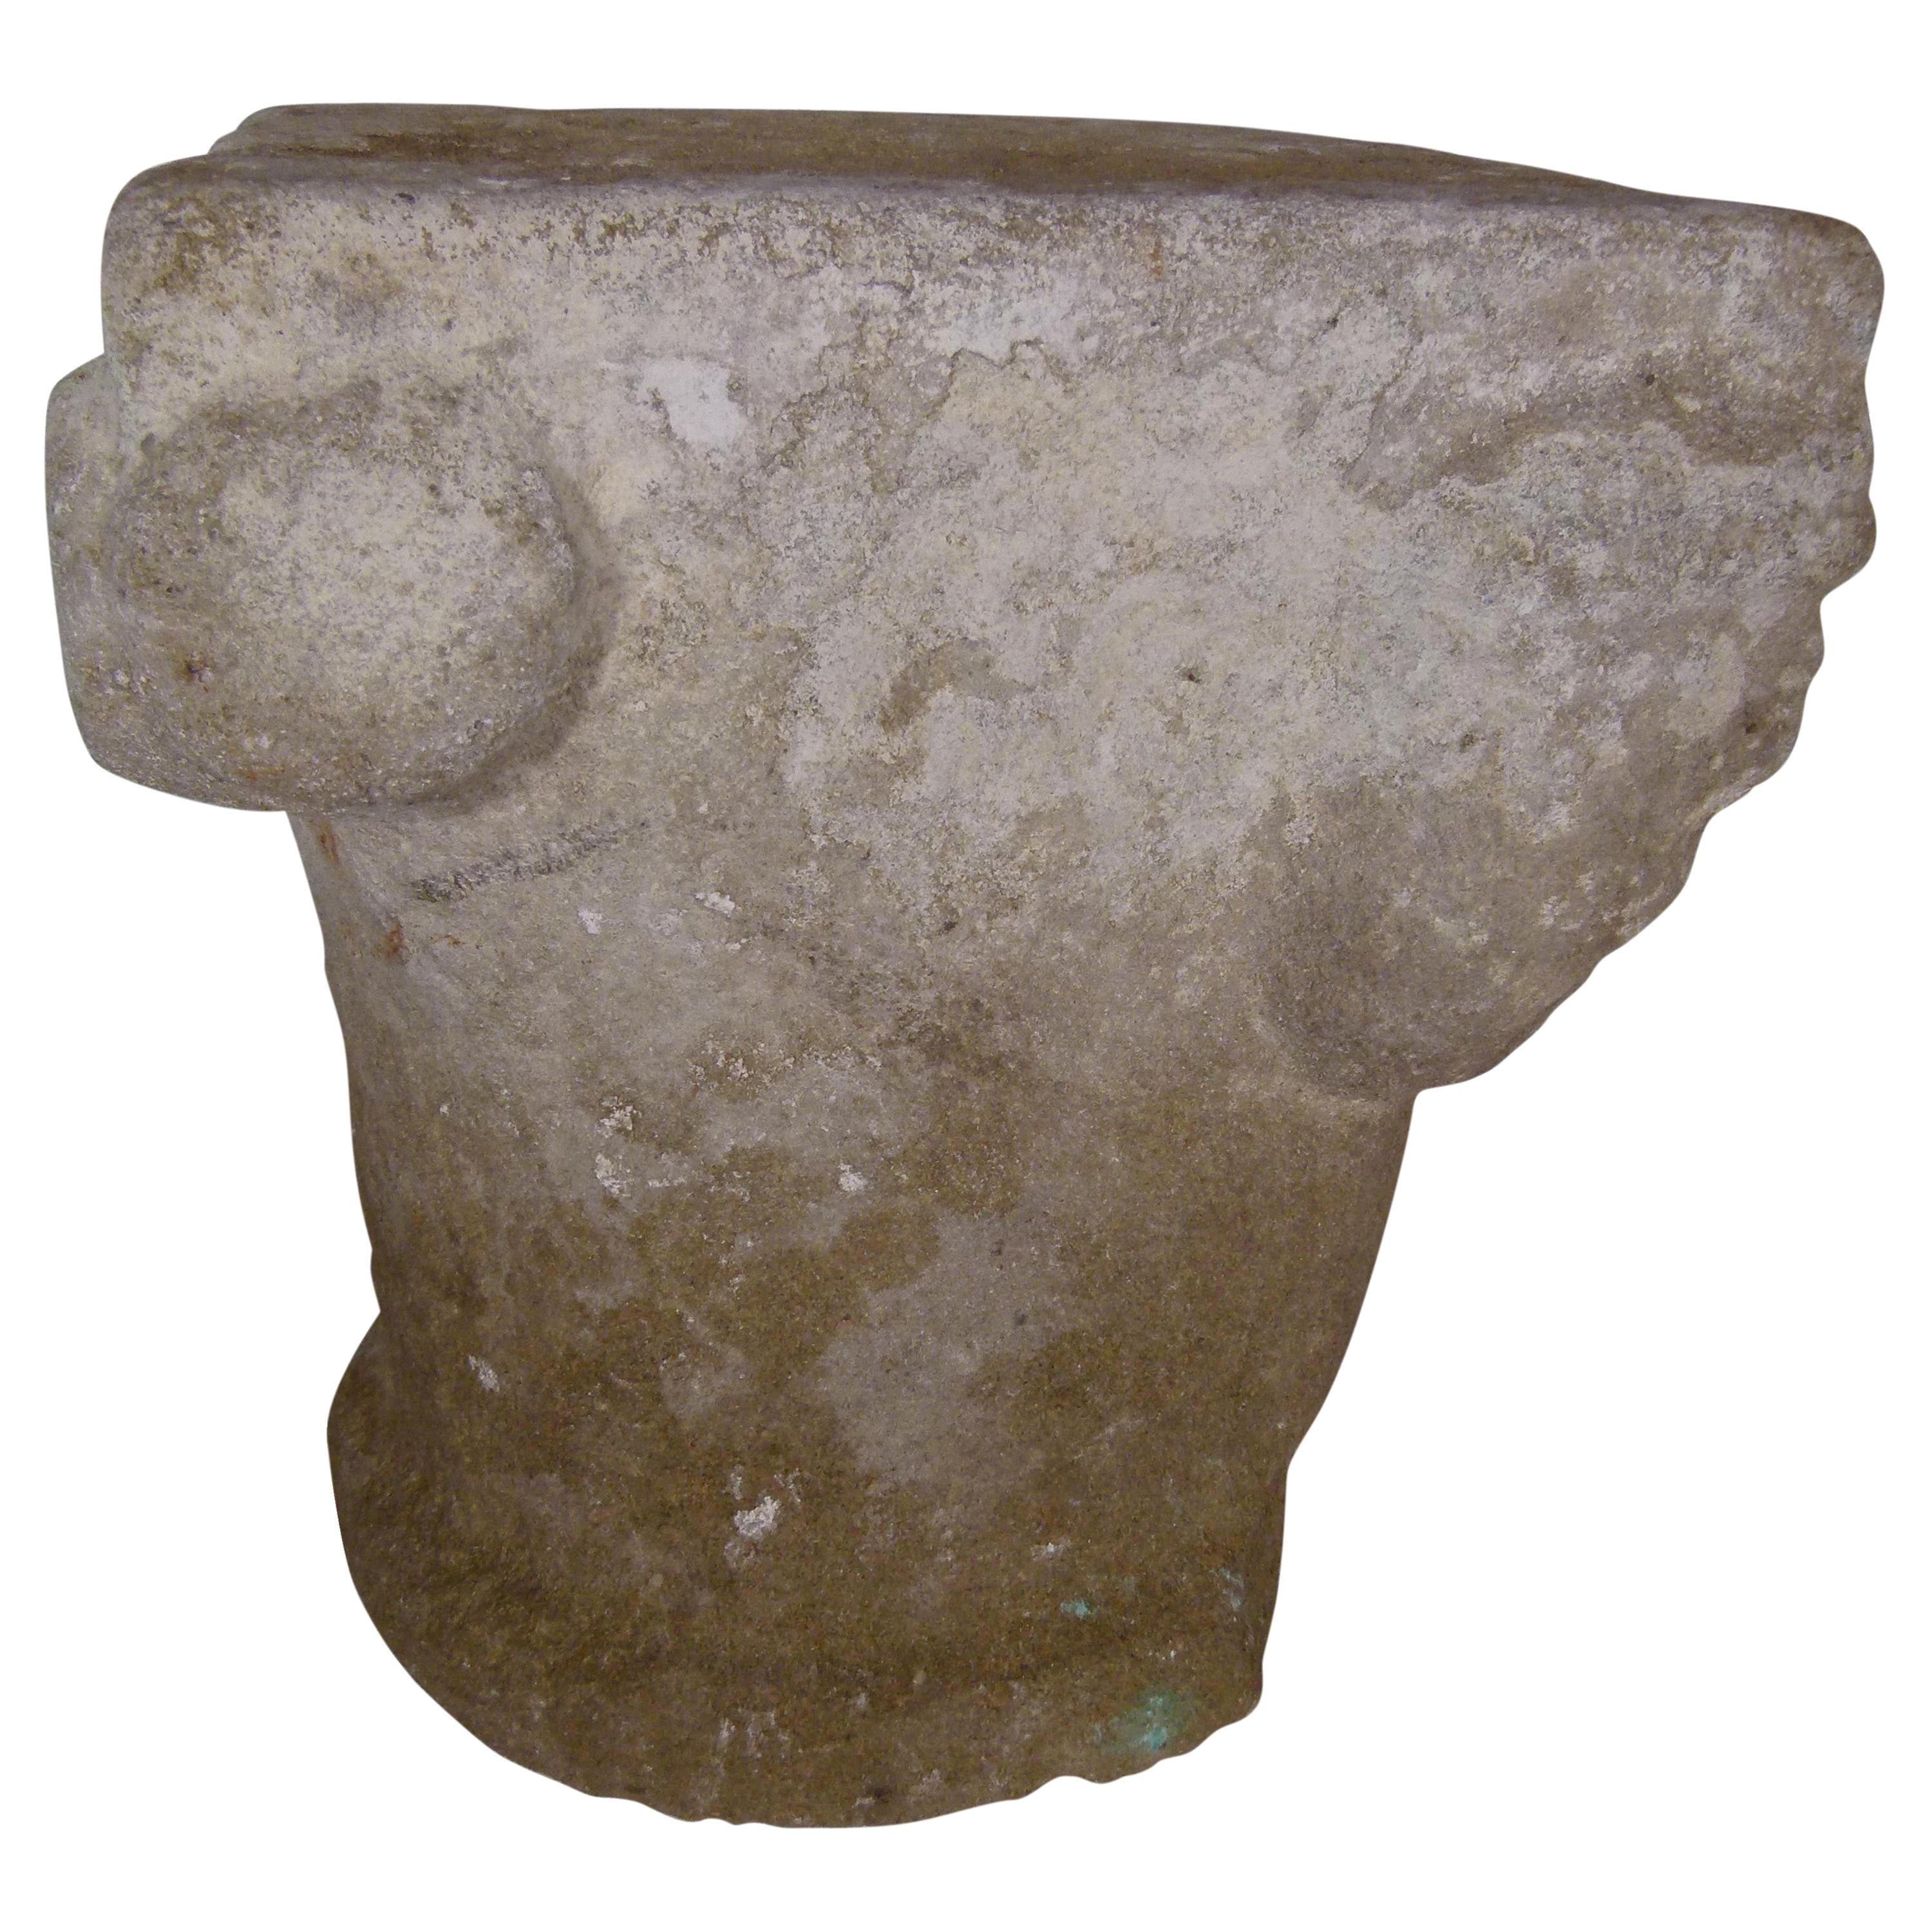 Capitale romane en pierre calcaire sculptée à la main, Espagne